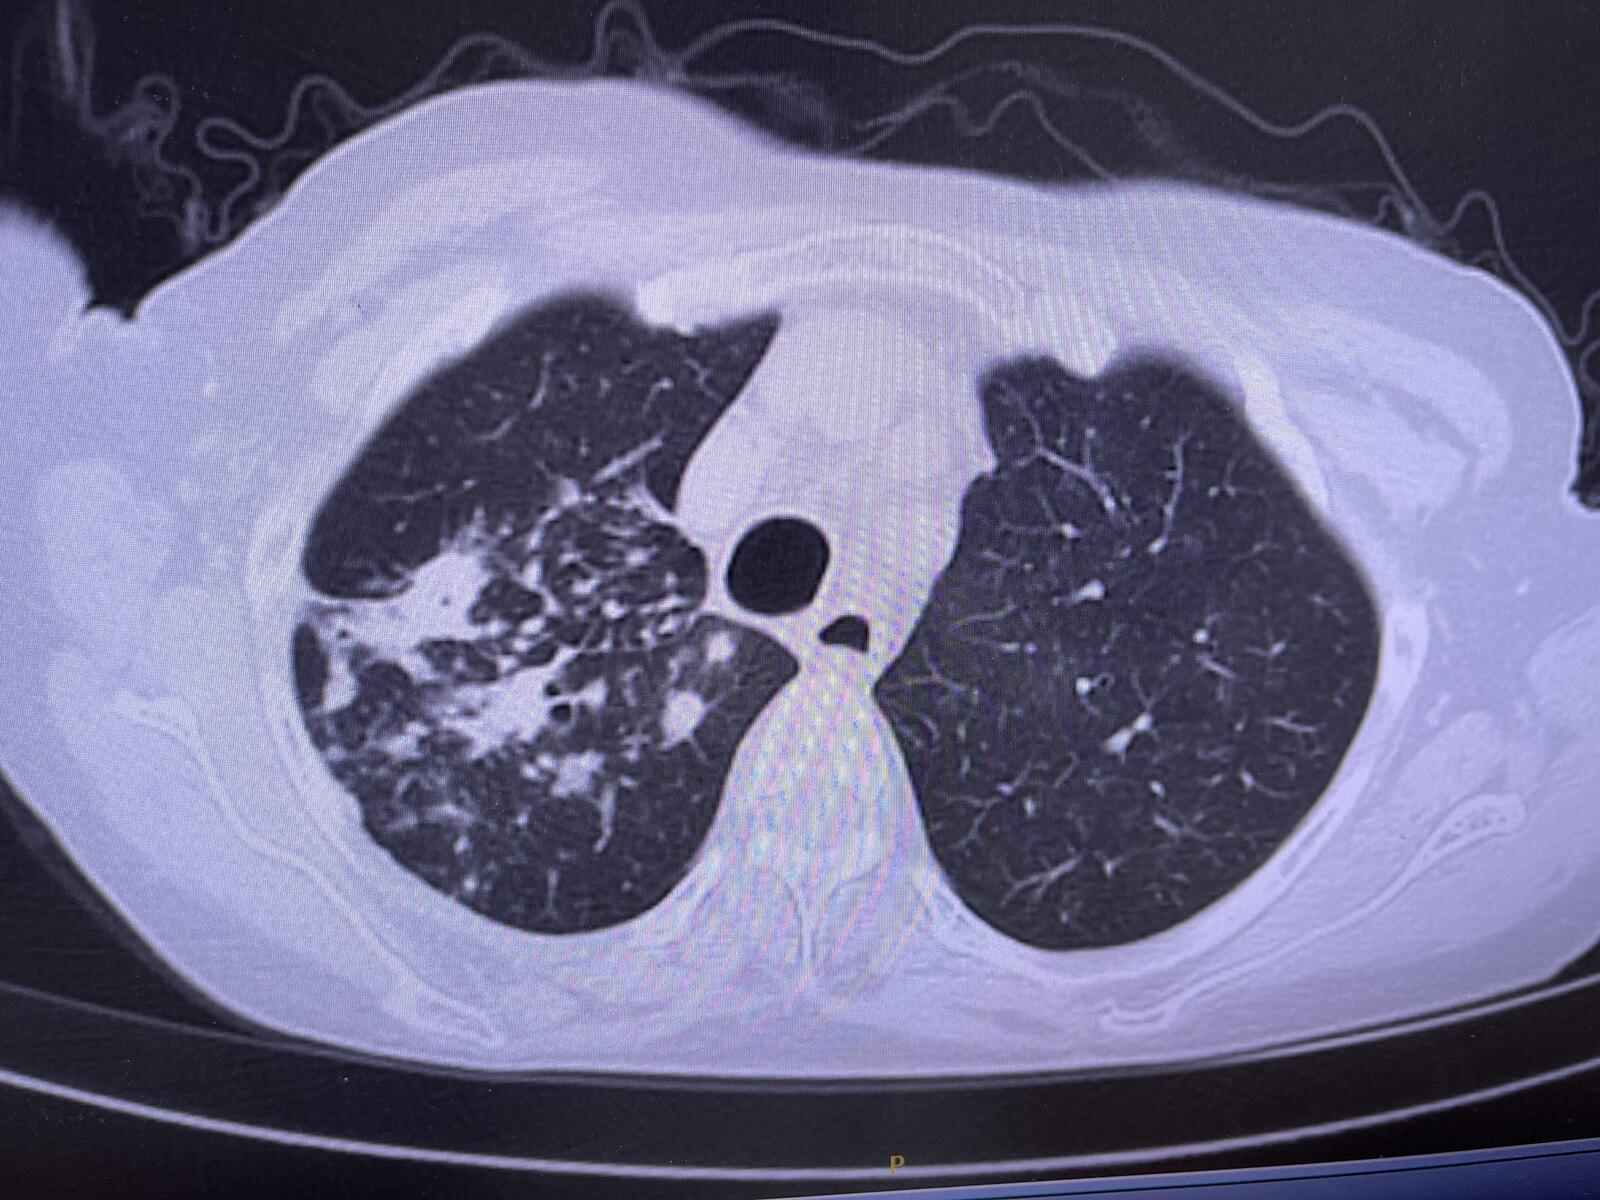 肺结核的ct影像图片图片